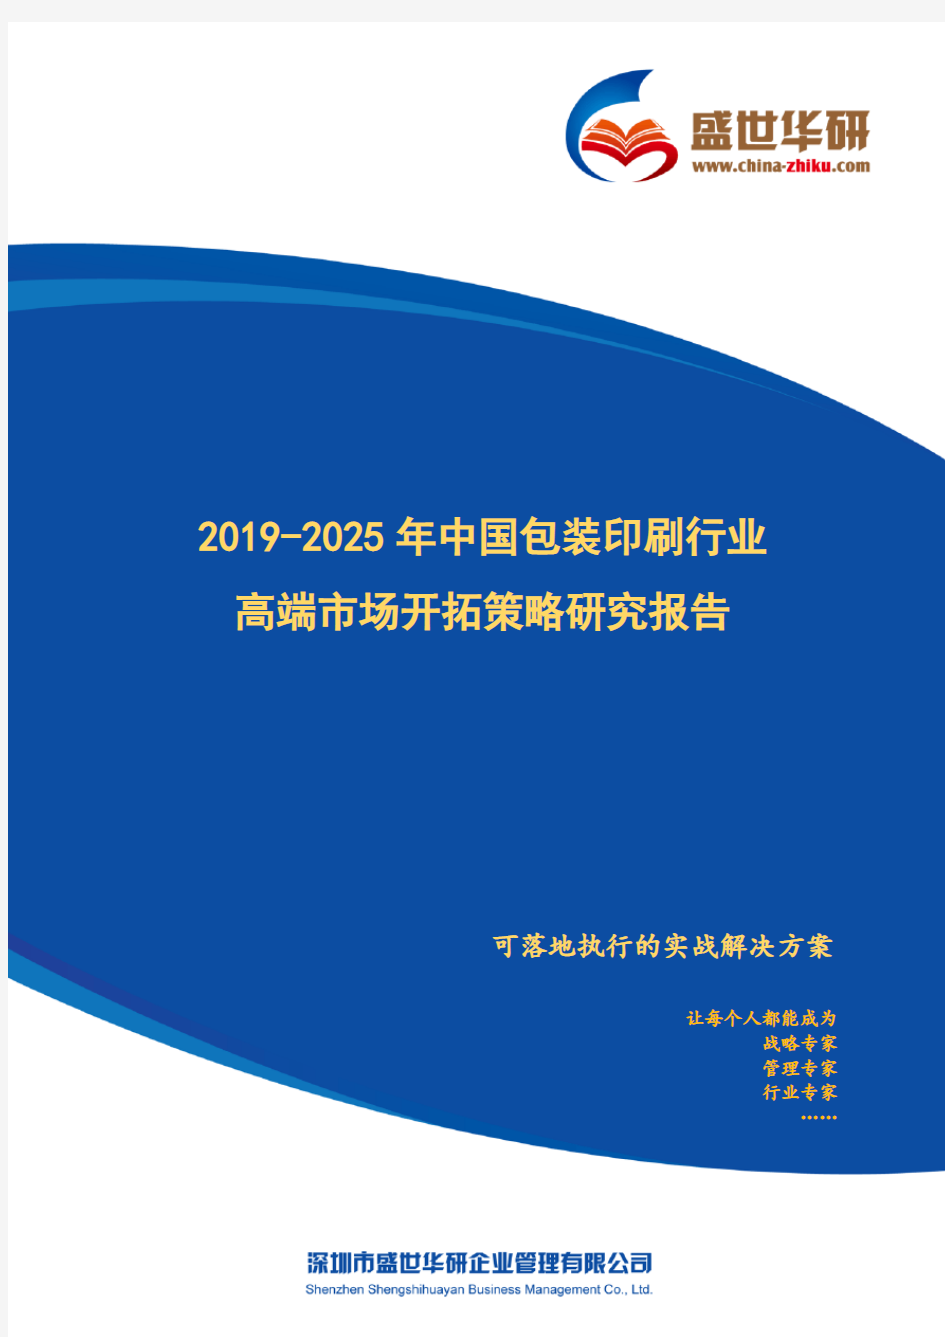 【完整版】2019-2025年中国包装印刷行业高端市场开拓策略研究报告